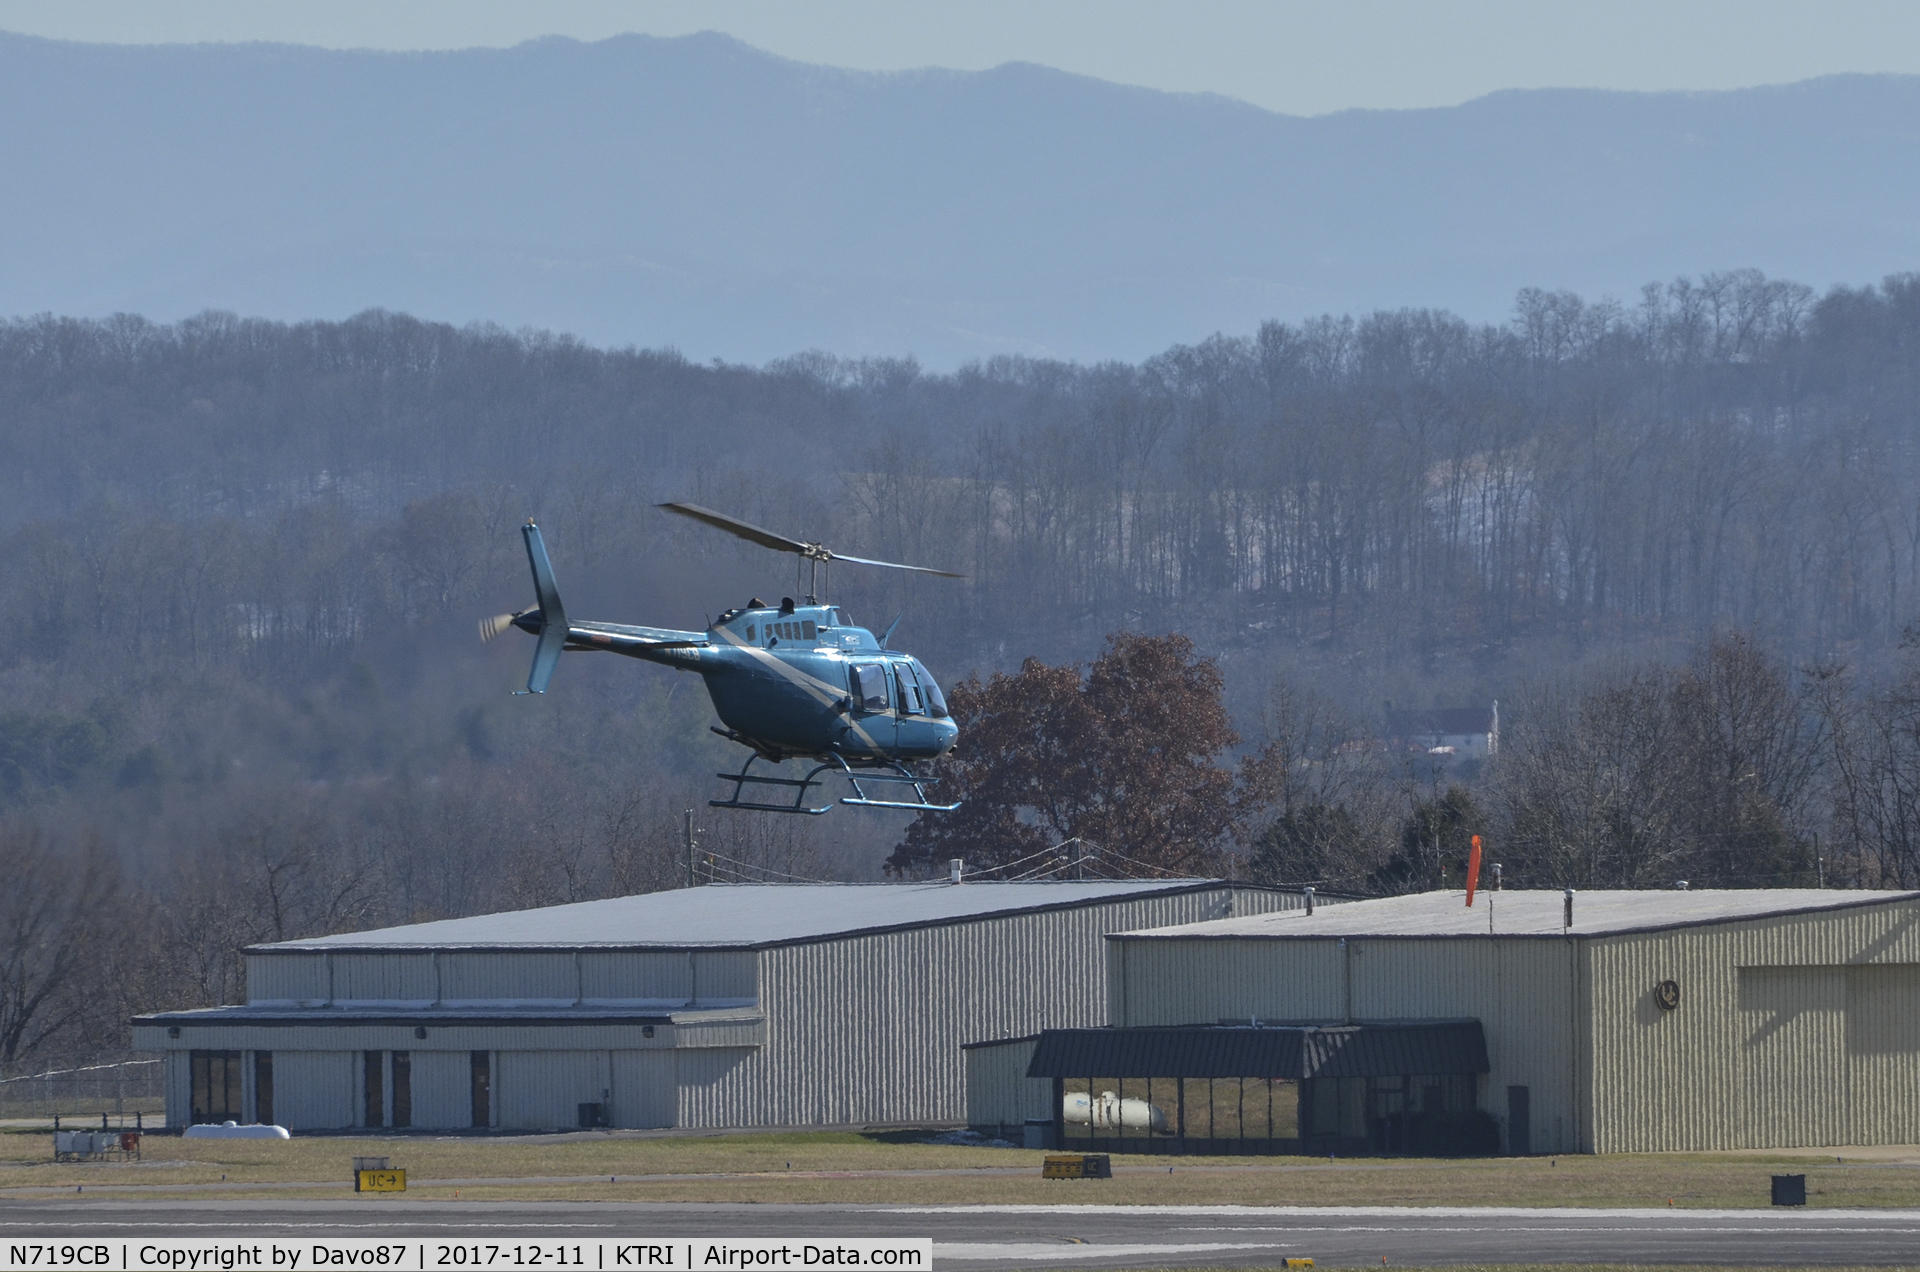 N719CB, 1972 Bell 206B-III C/N 890, Departing Tri-Cities Airport (KTRI) in Blountville, TN.